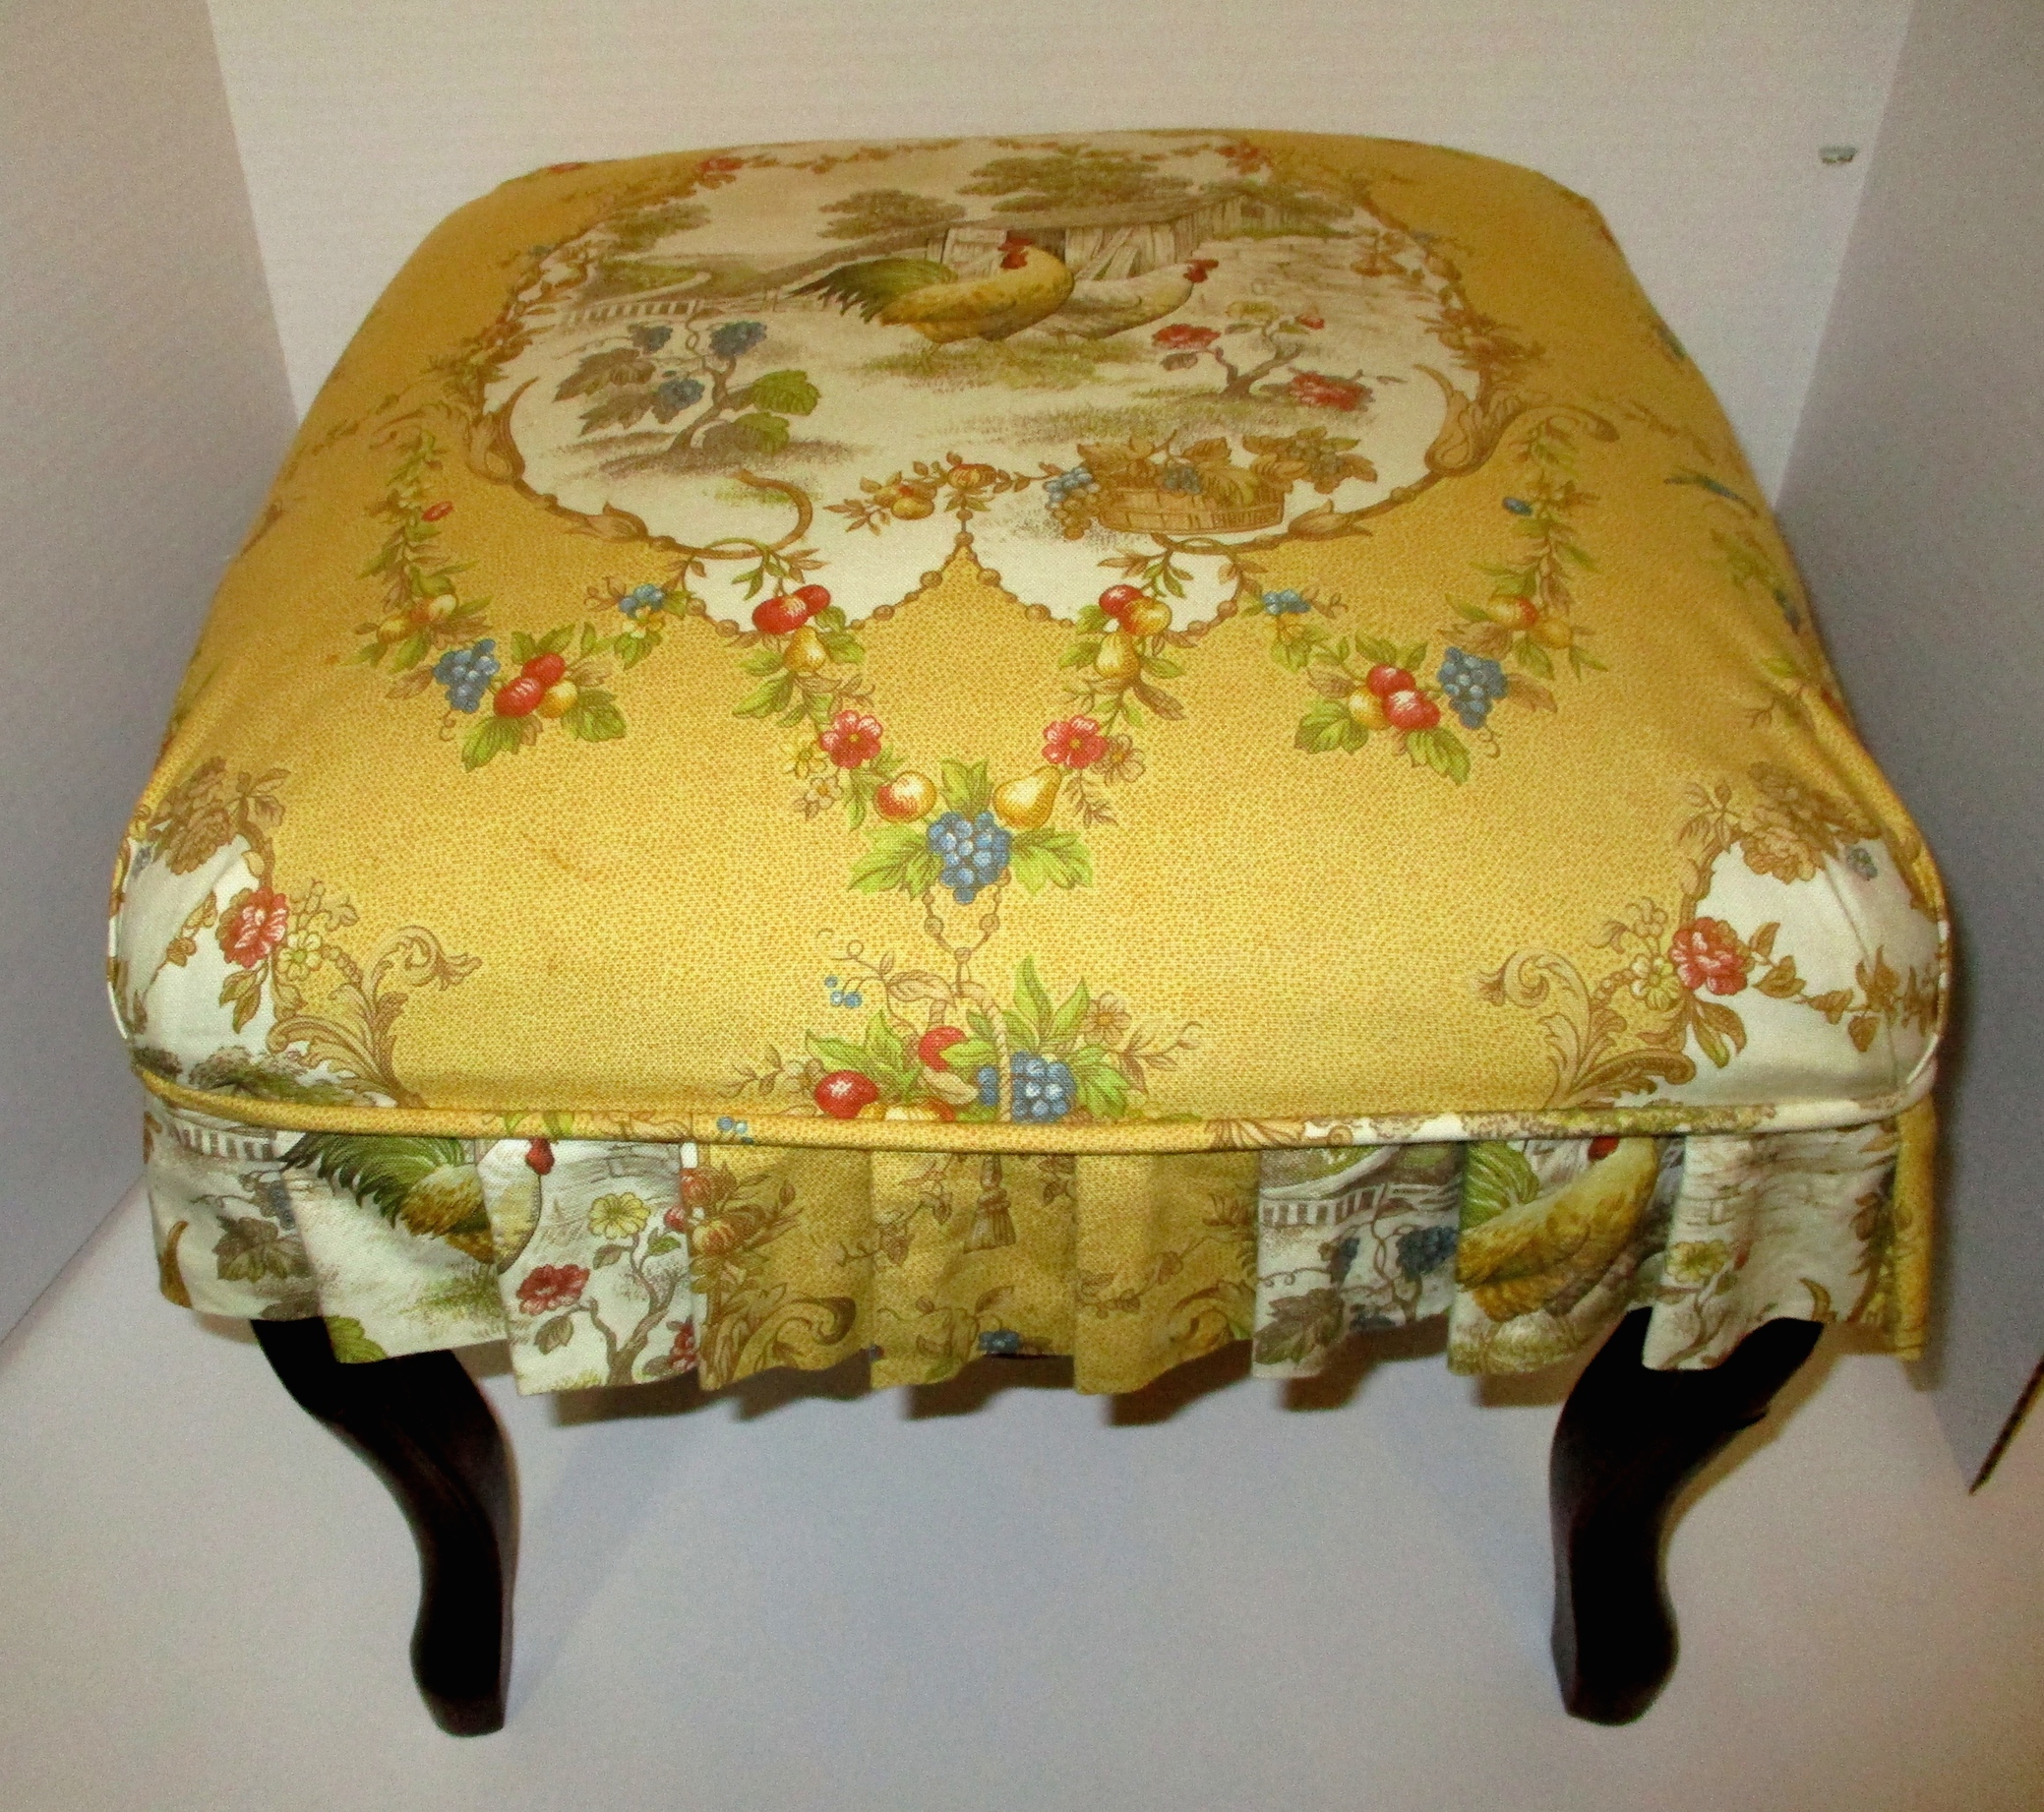 19th Century French Walnut Stool w/Custom Upholstery (16" W x 16" D x 15"H)